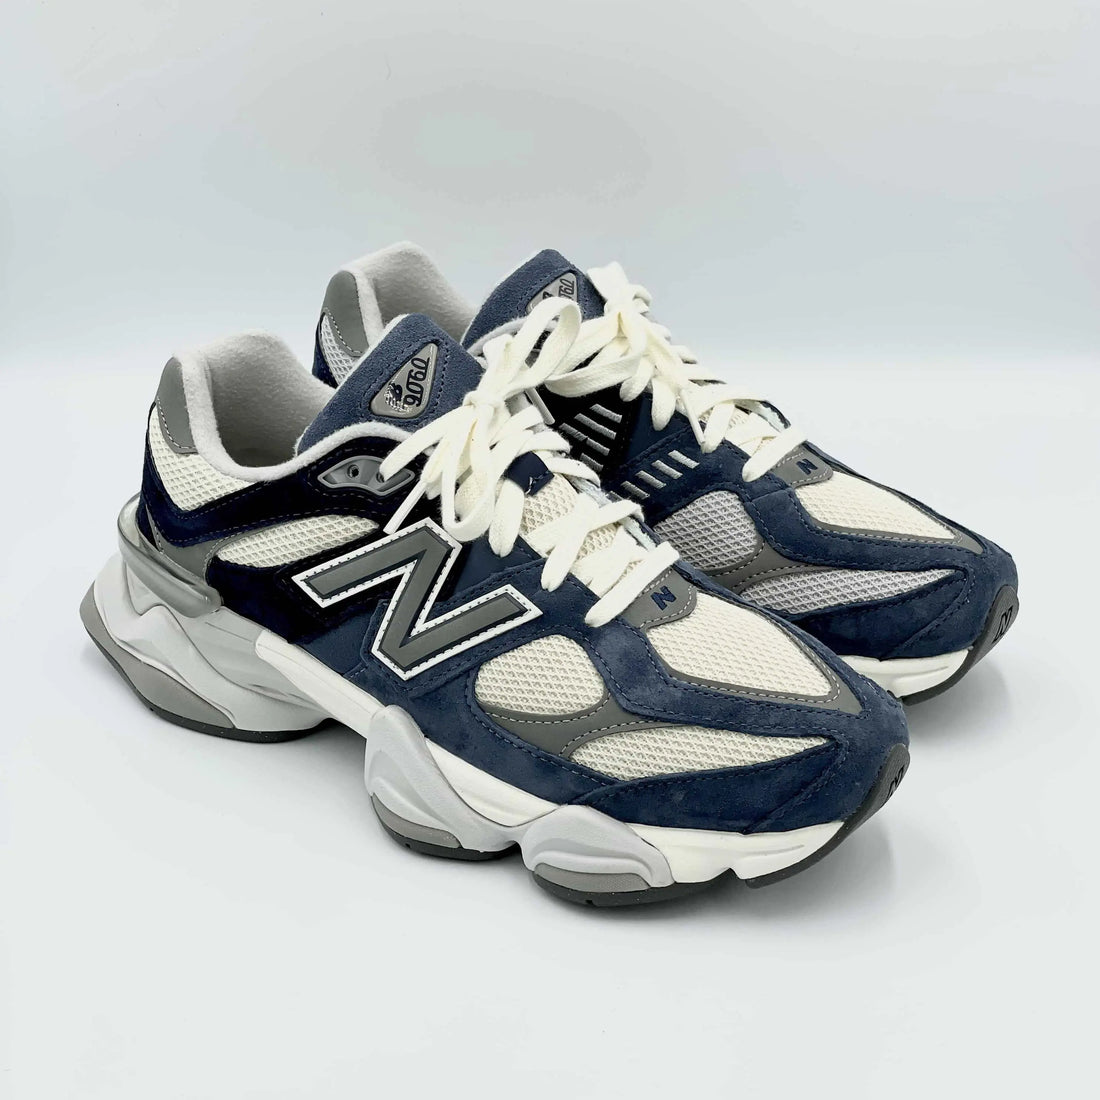 New Balance 9060 Natural Indigo  SA Sneakers